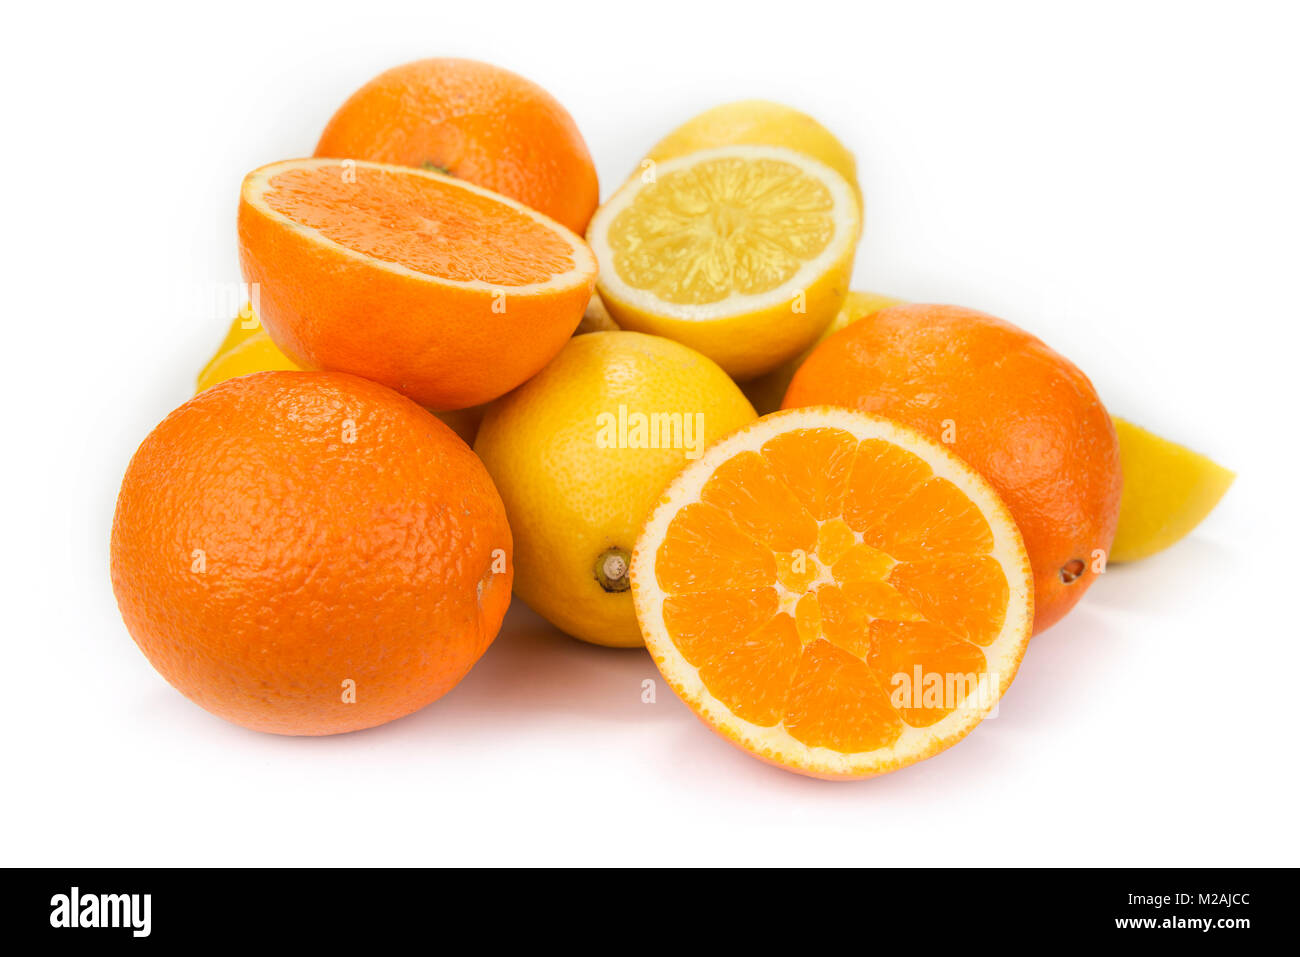 Fresh oranges and lemons on the white background Stock Photo